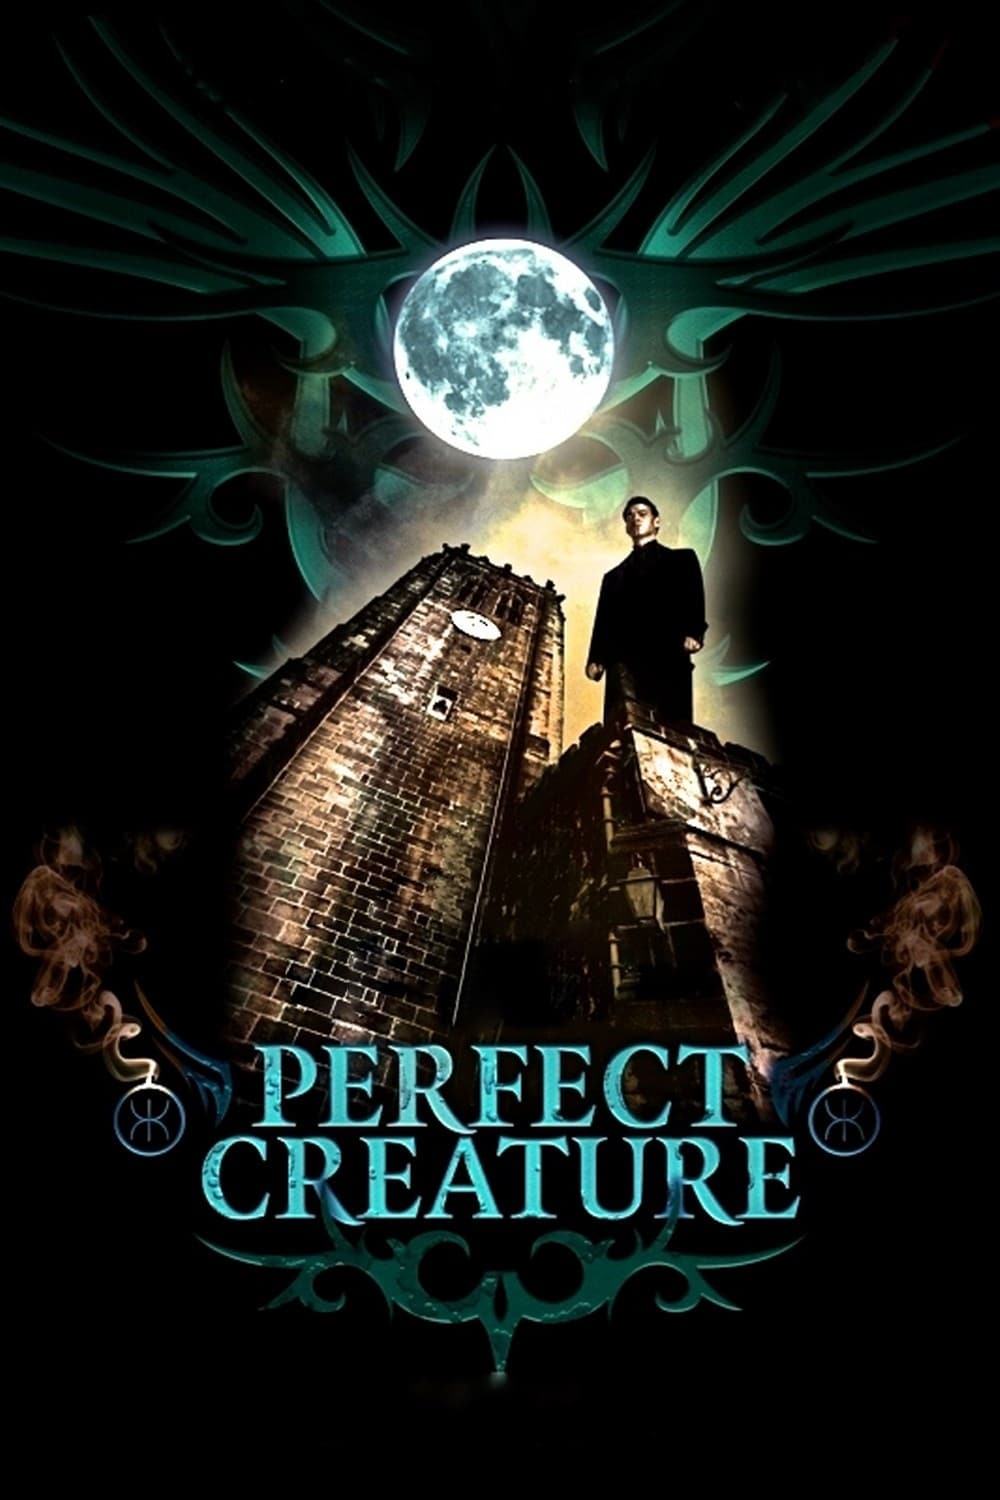 Perfect Creature (2007)